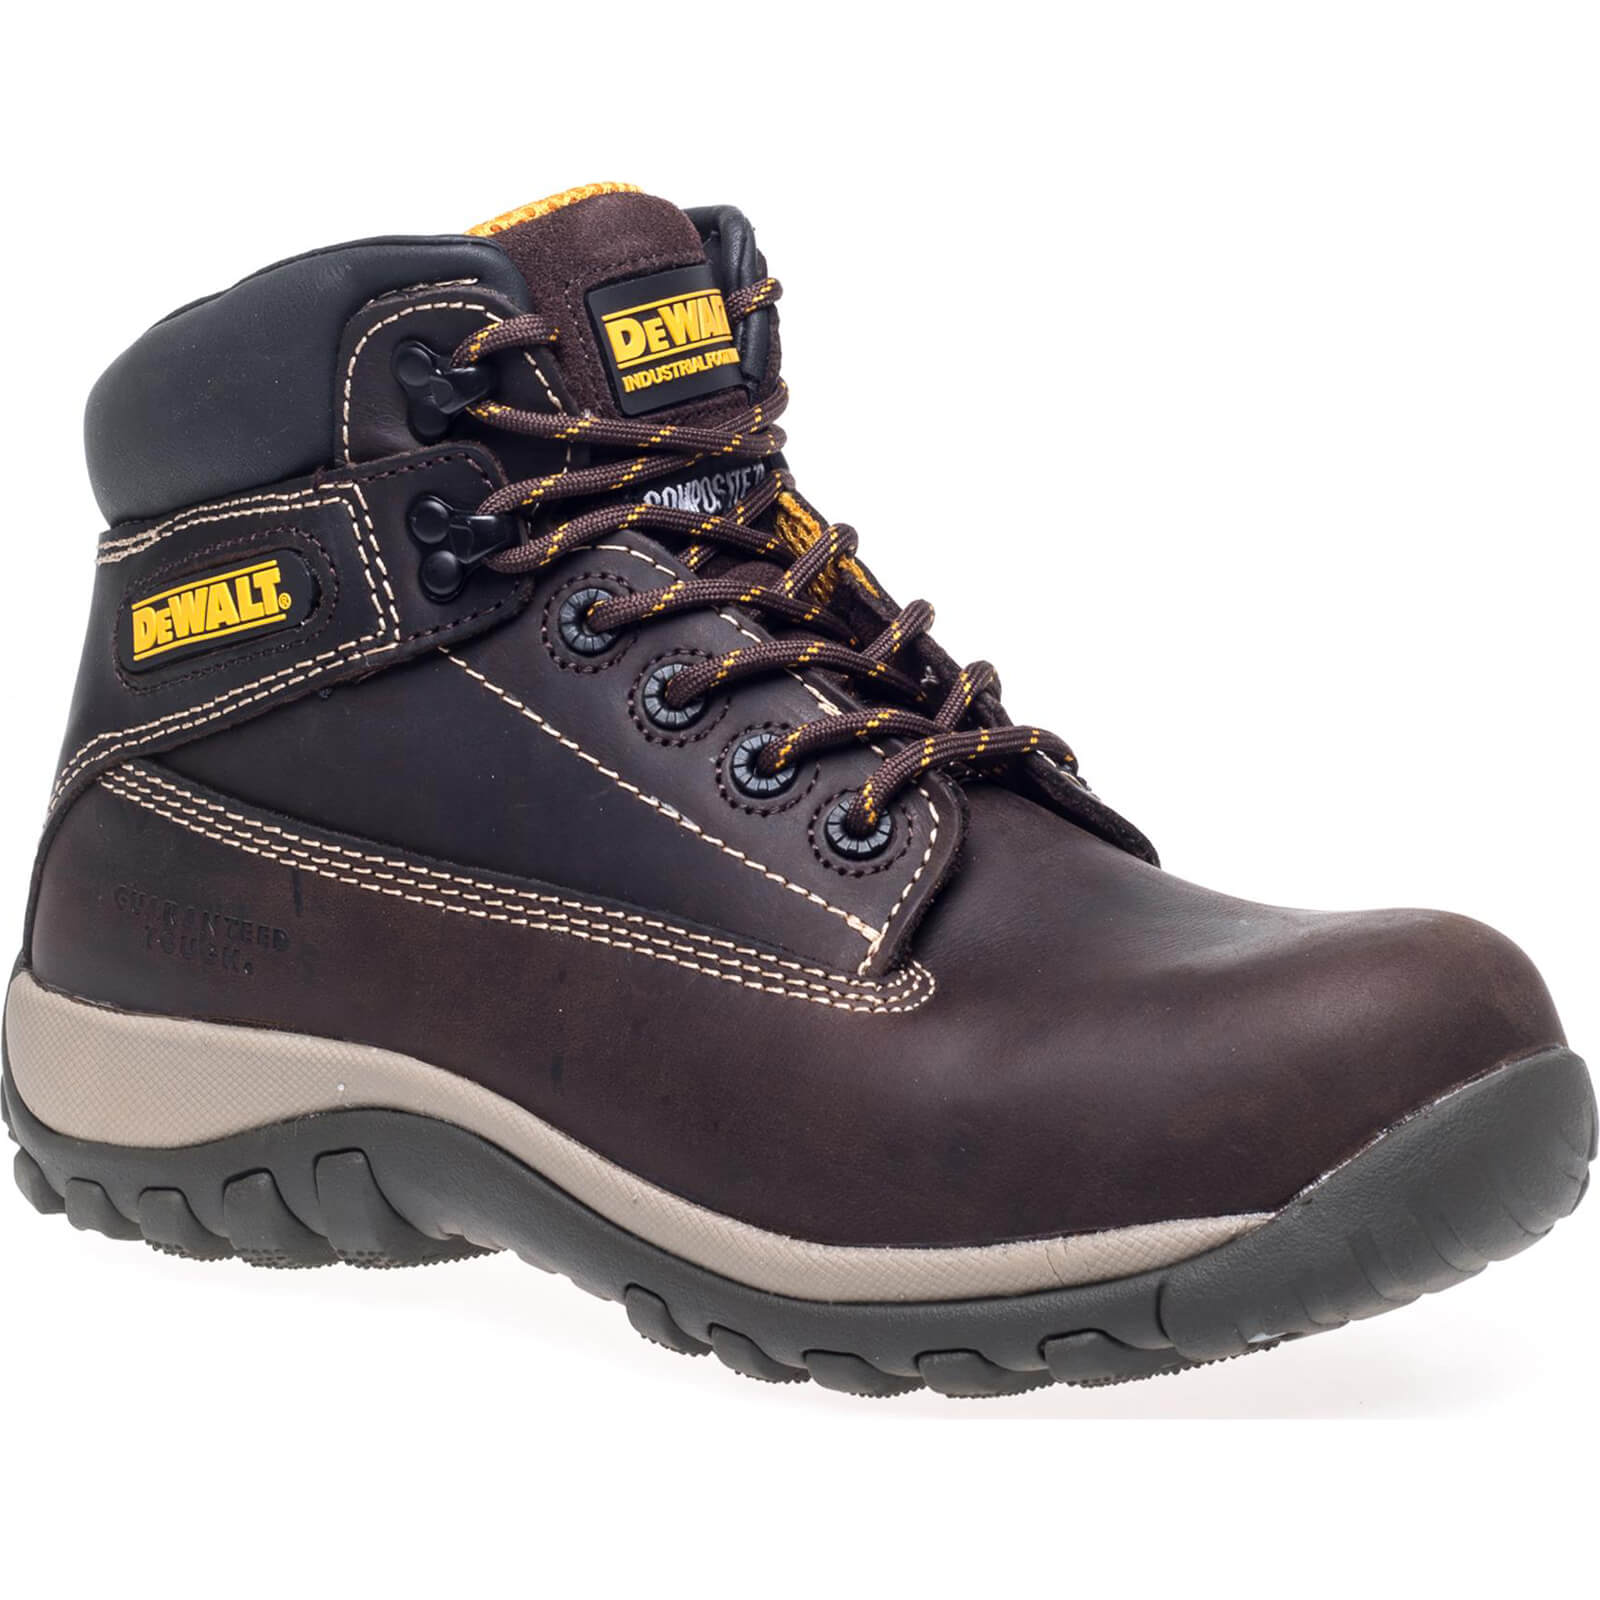 Photo of Dewalt Hammer Non Metallic Safety Boots Brown Size 9